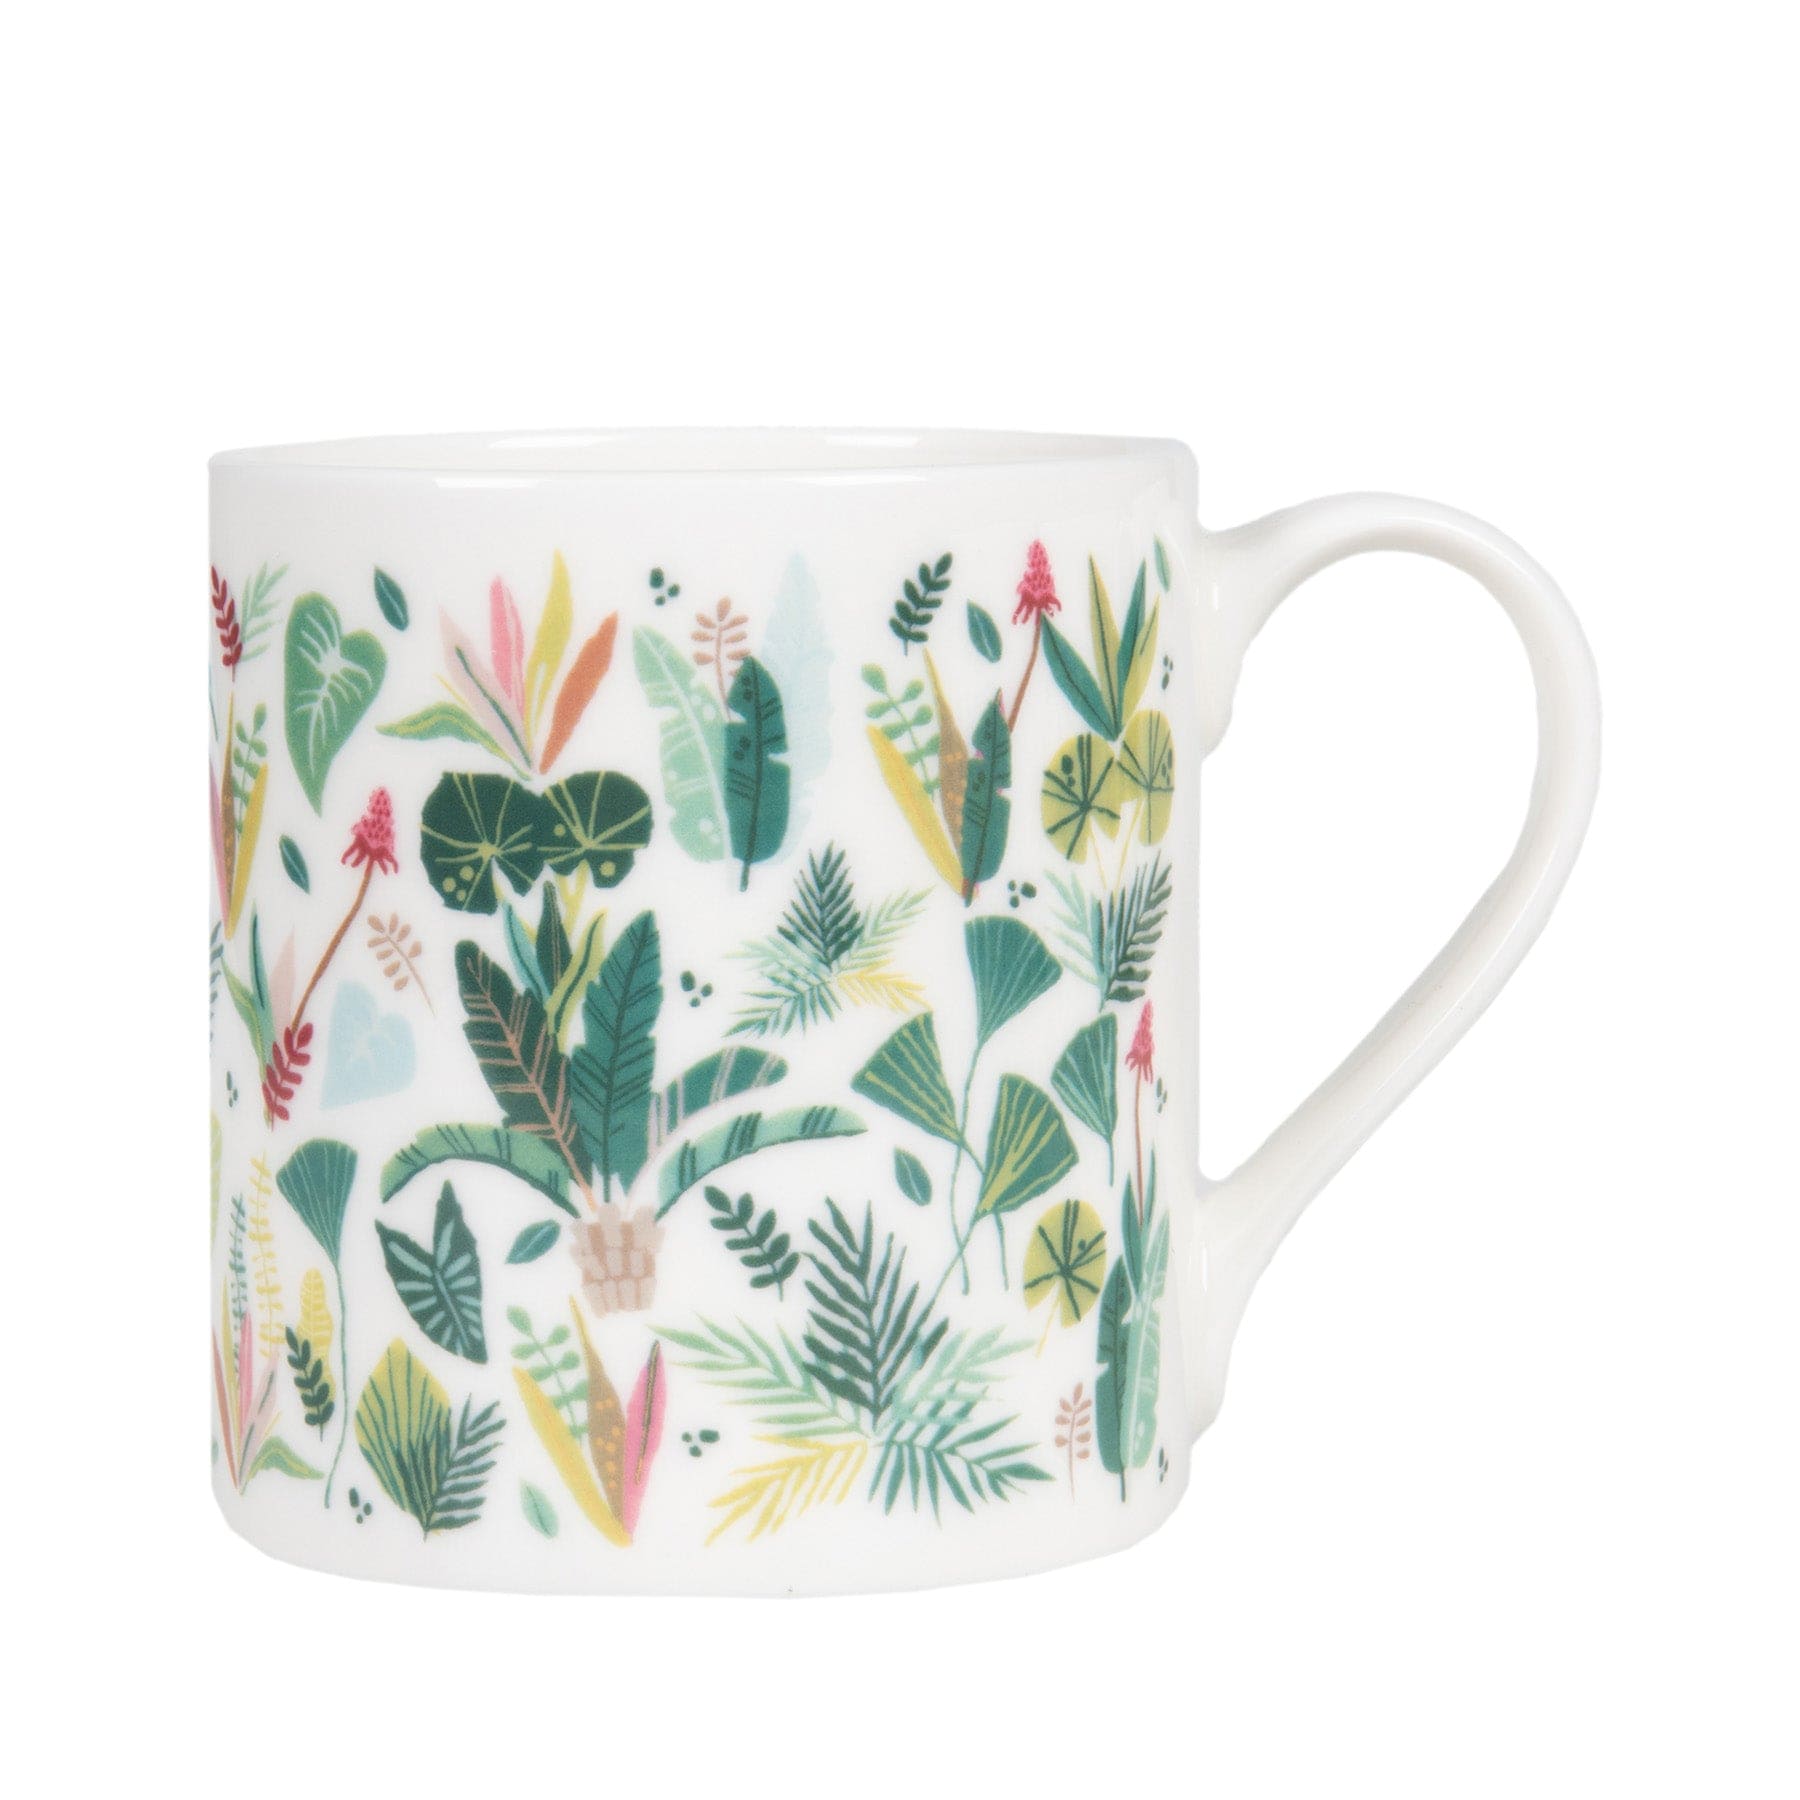 Rainforest print mug